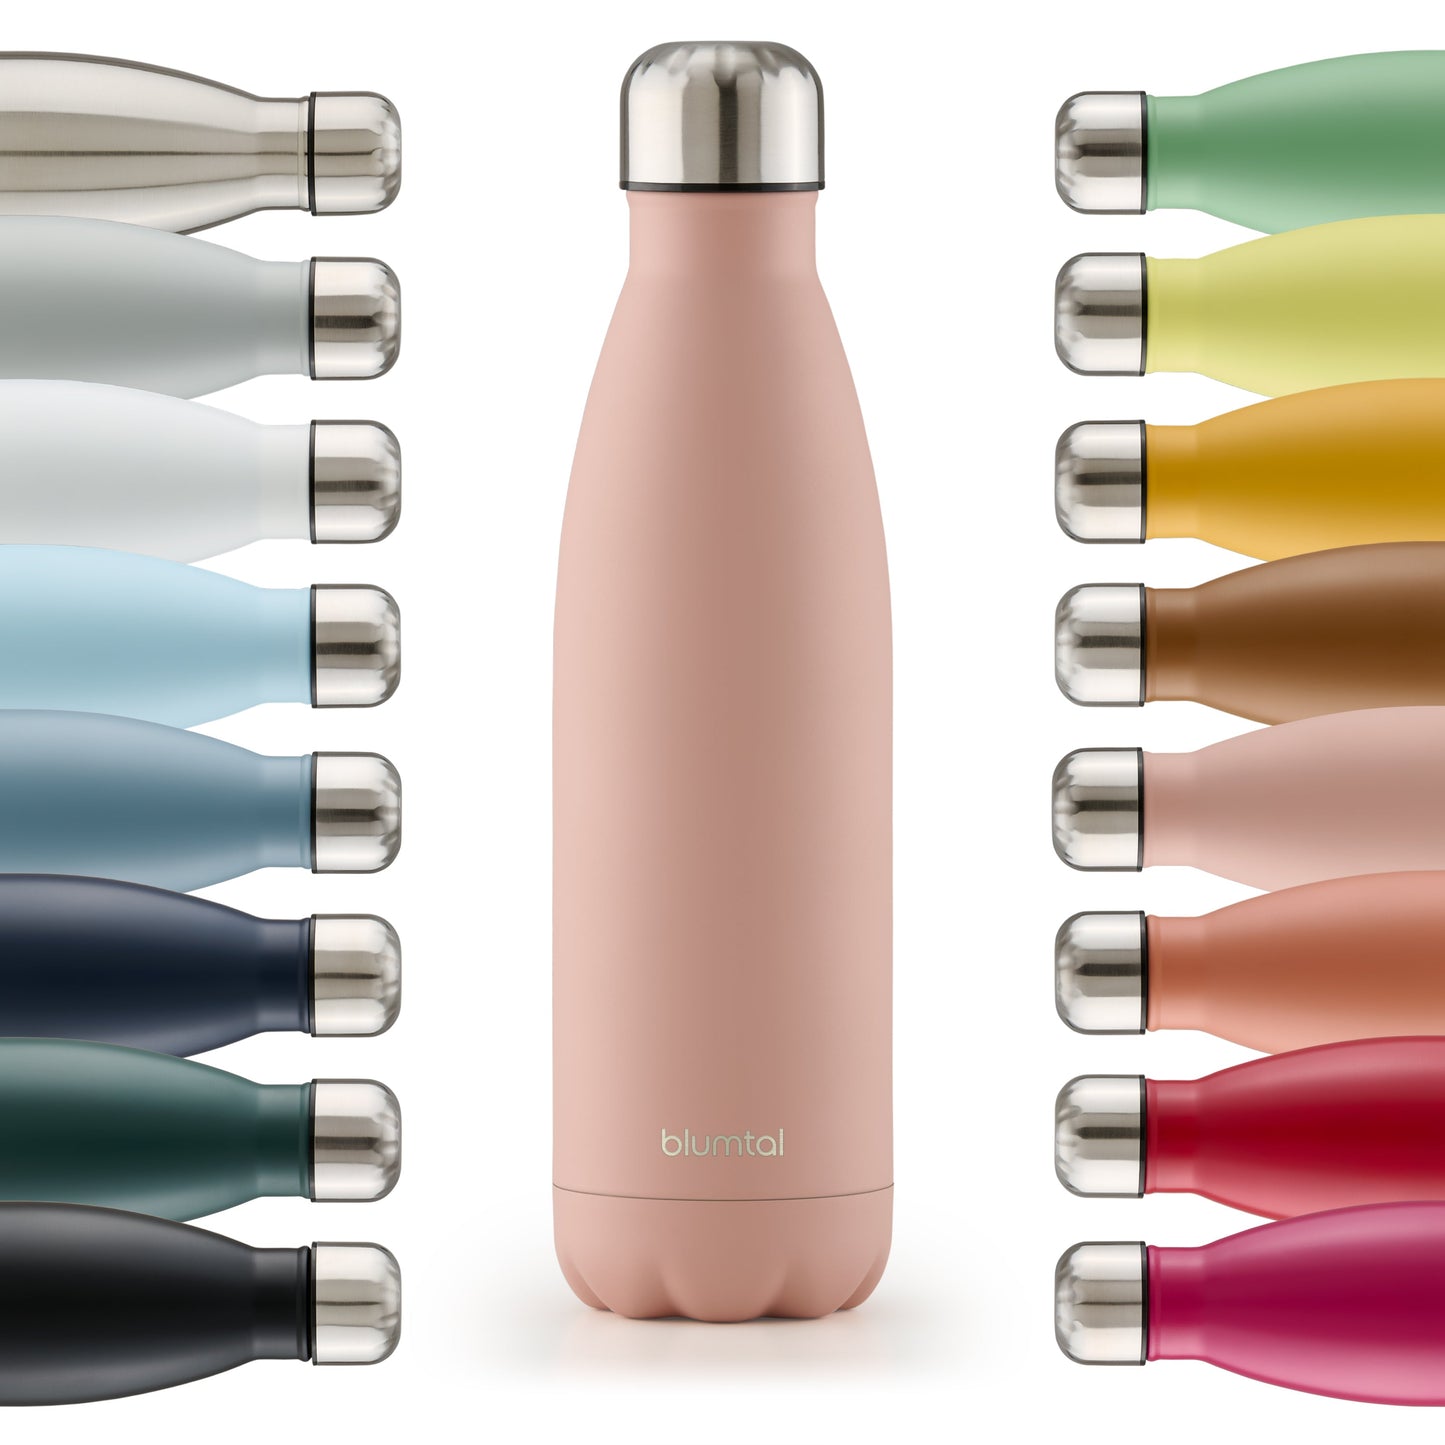 Farbige Auswahl an isolierten Edelstahl-Trinkflaschen von blumtal in einer Reihe angeordnet mit Fokus auf eine vorderseitige mellow rosa farbene Flasche.